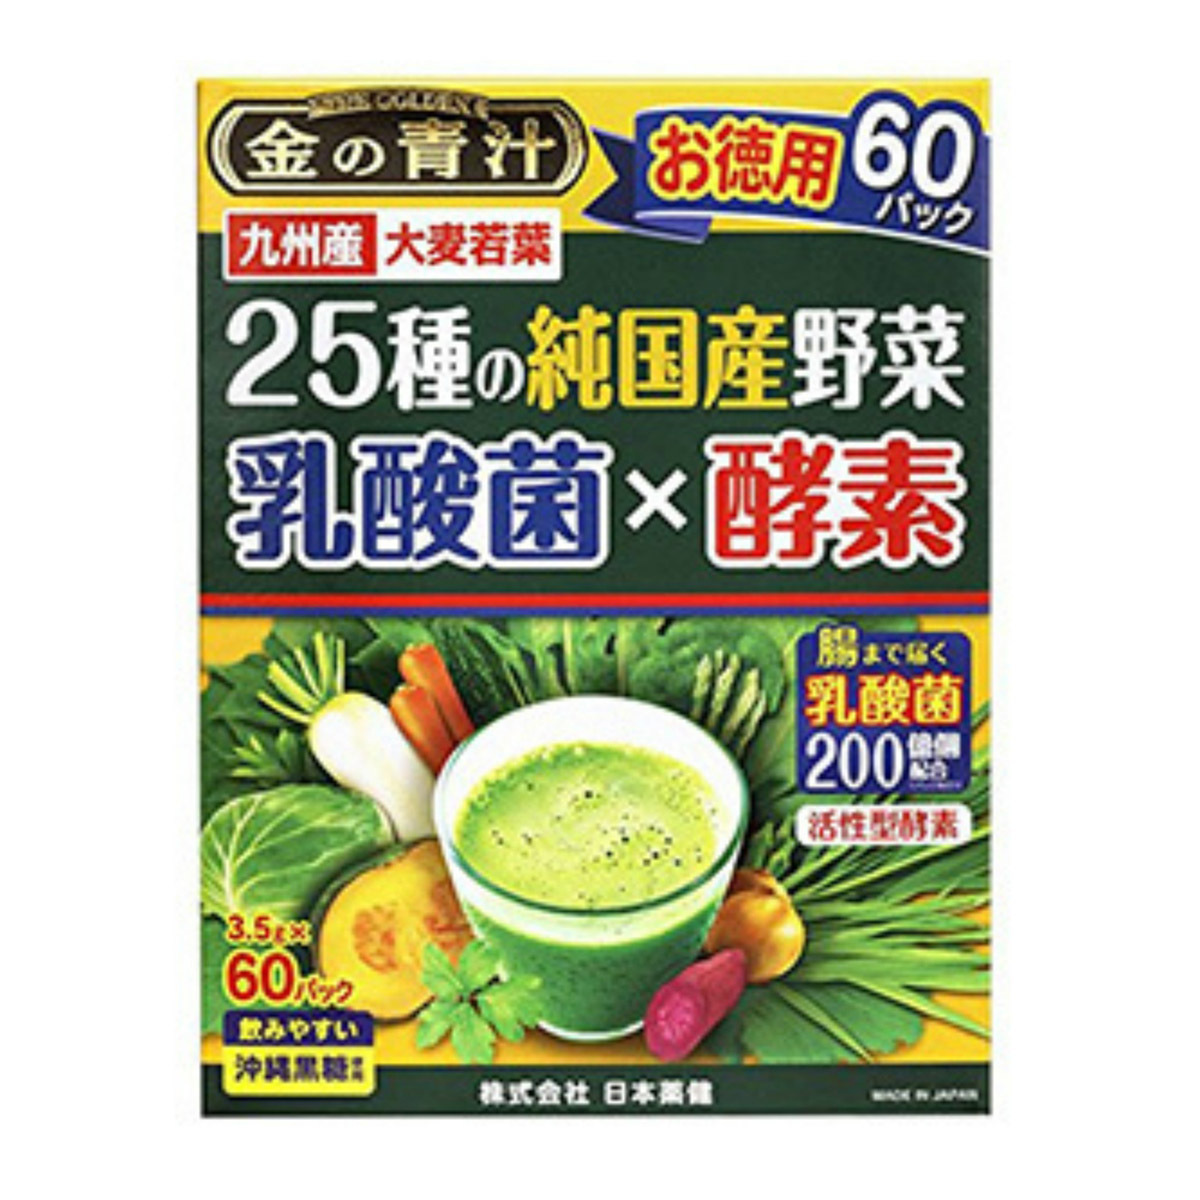 日本薬健 金の青汁 25種の純国産野菜 乳酸菌×酵素 60パック×1個の商品画像